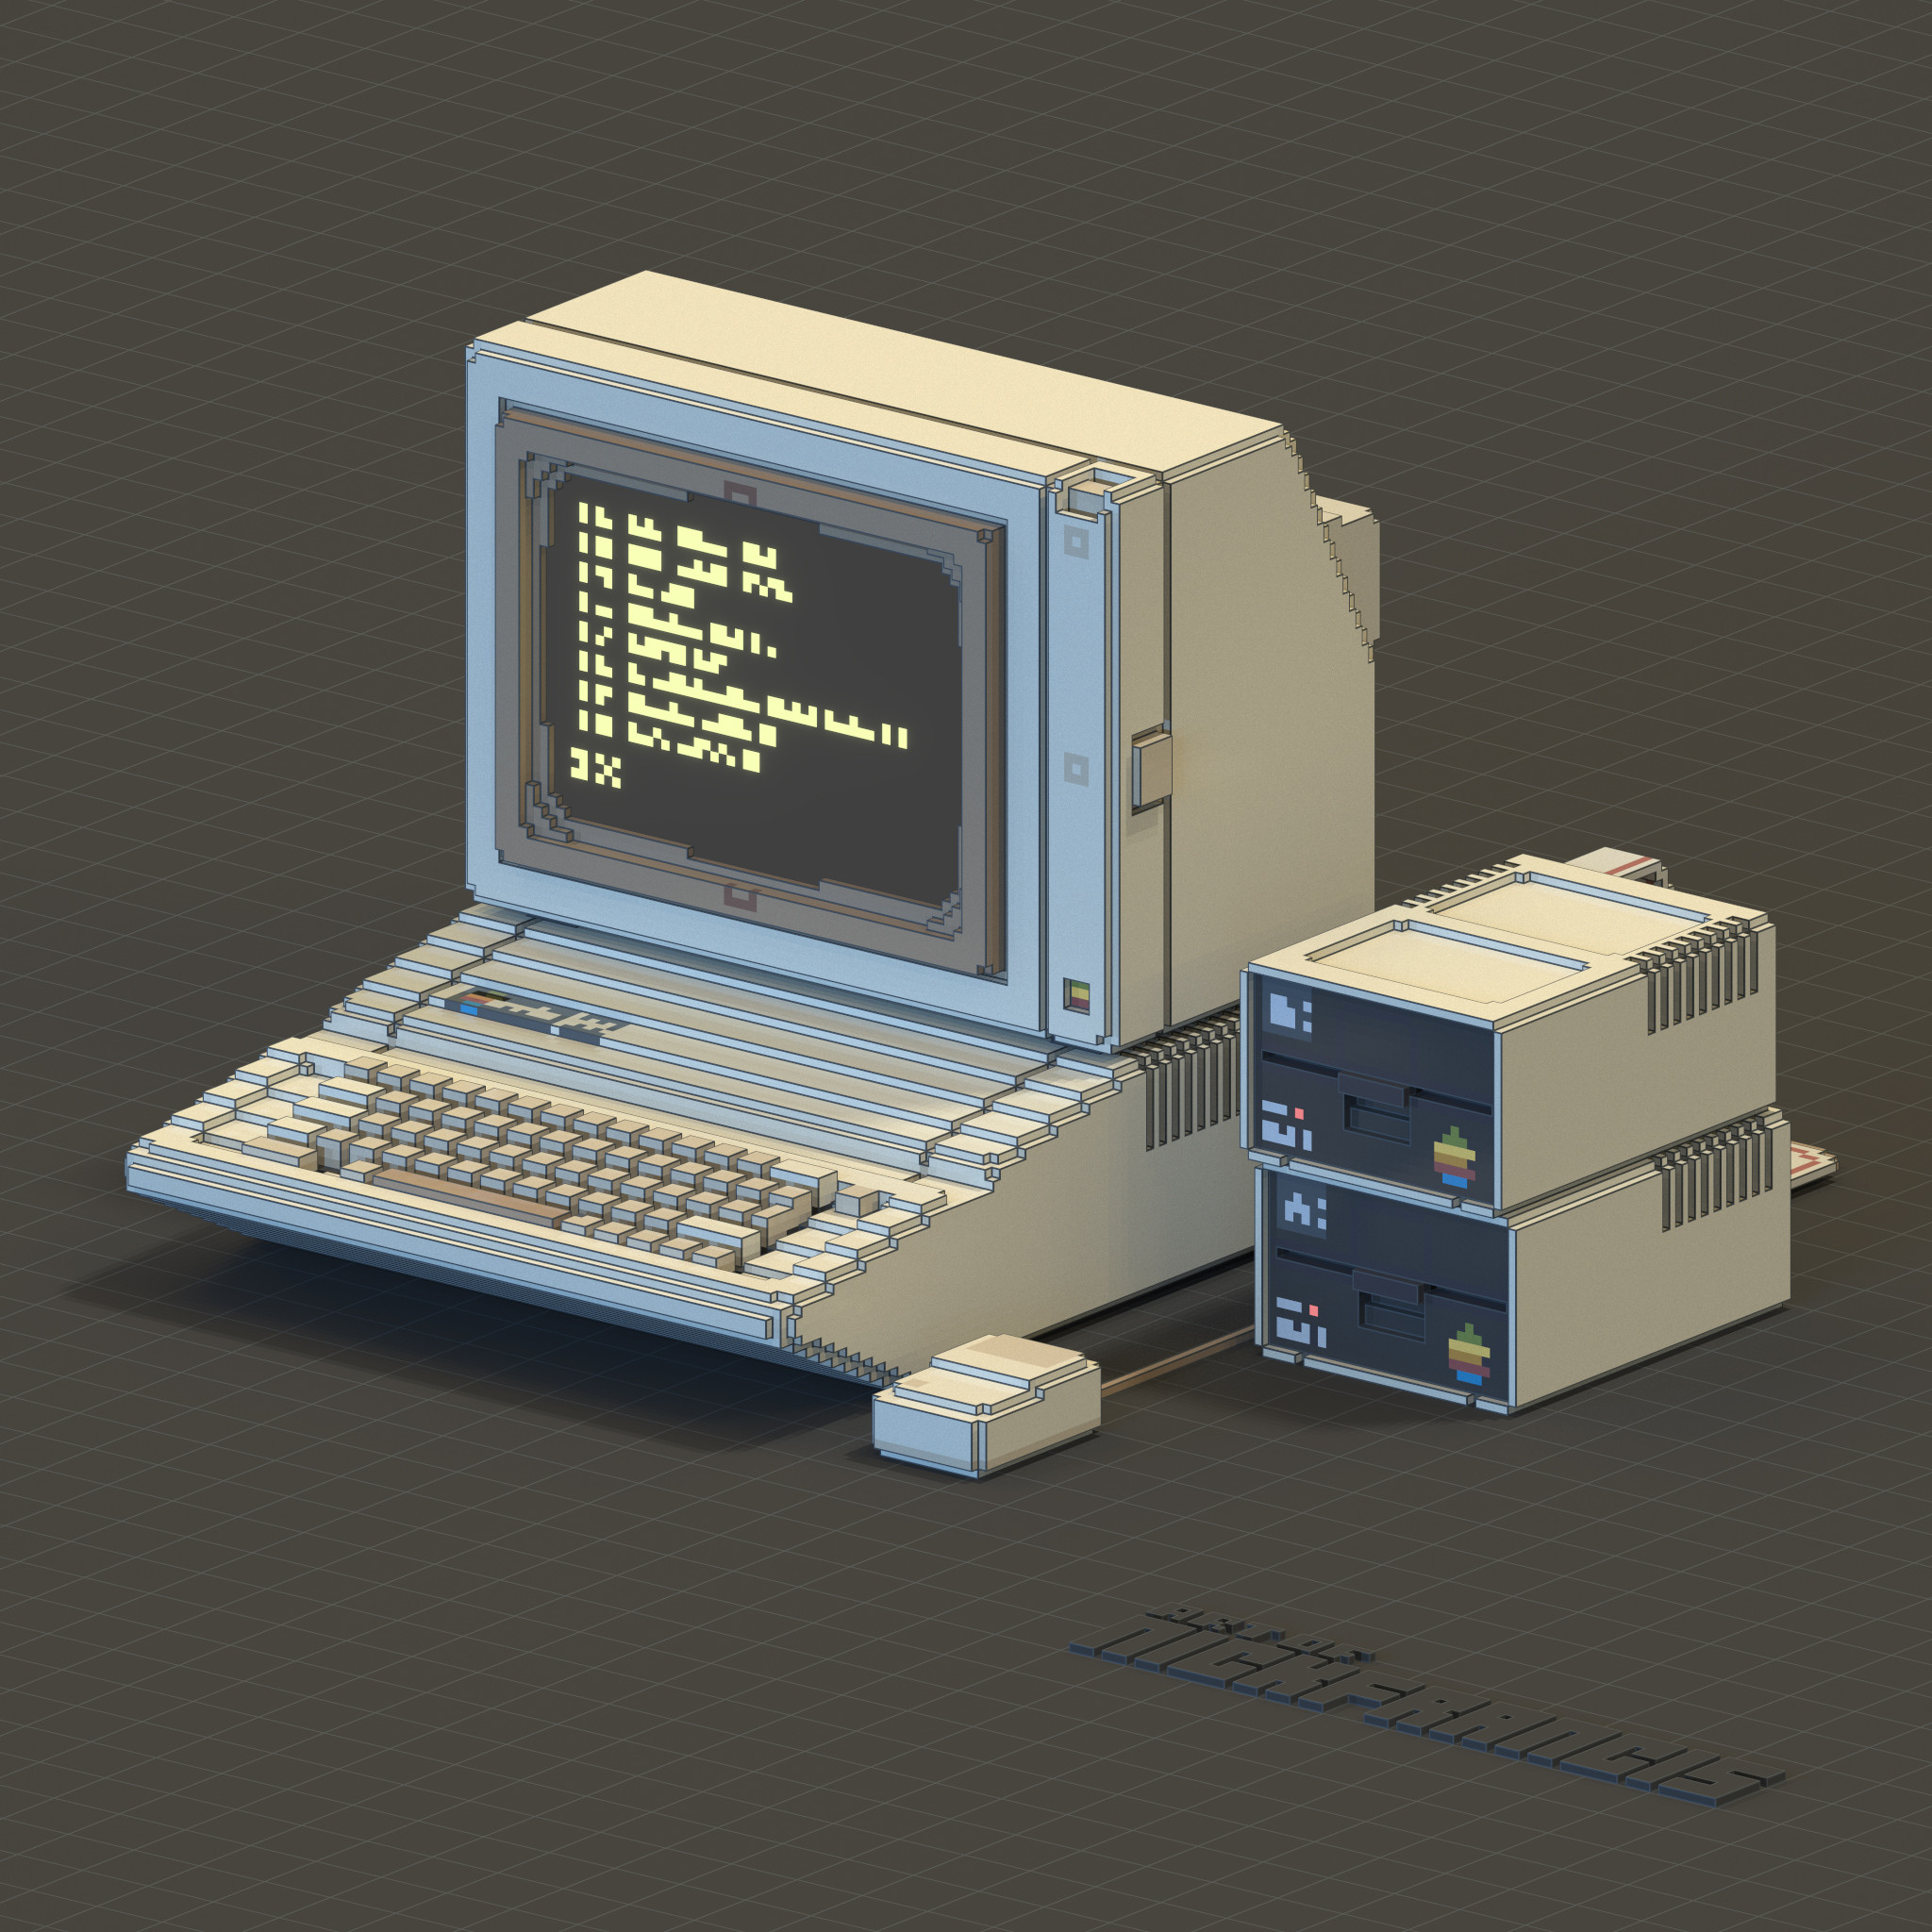 Voxel rendering of a Apple IIe workstation.